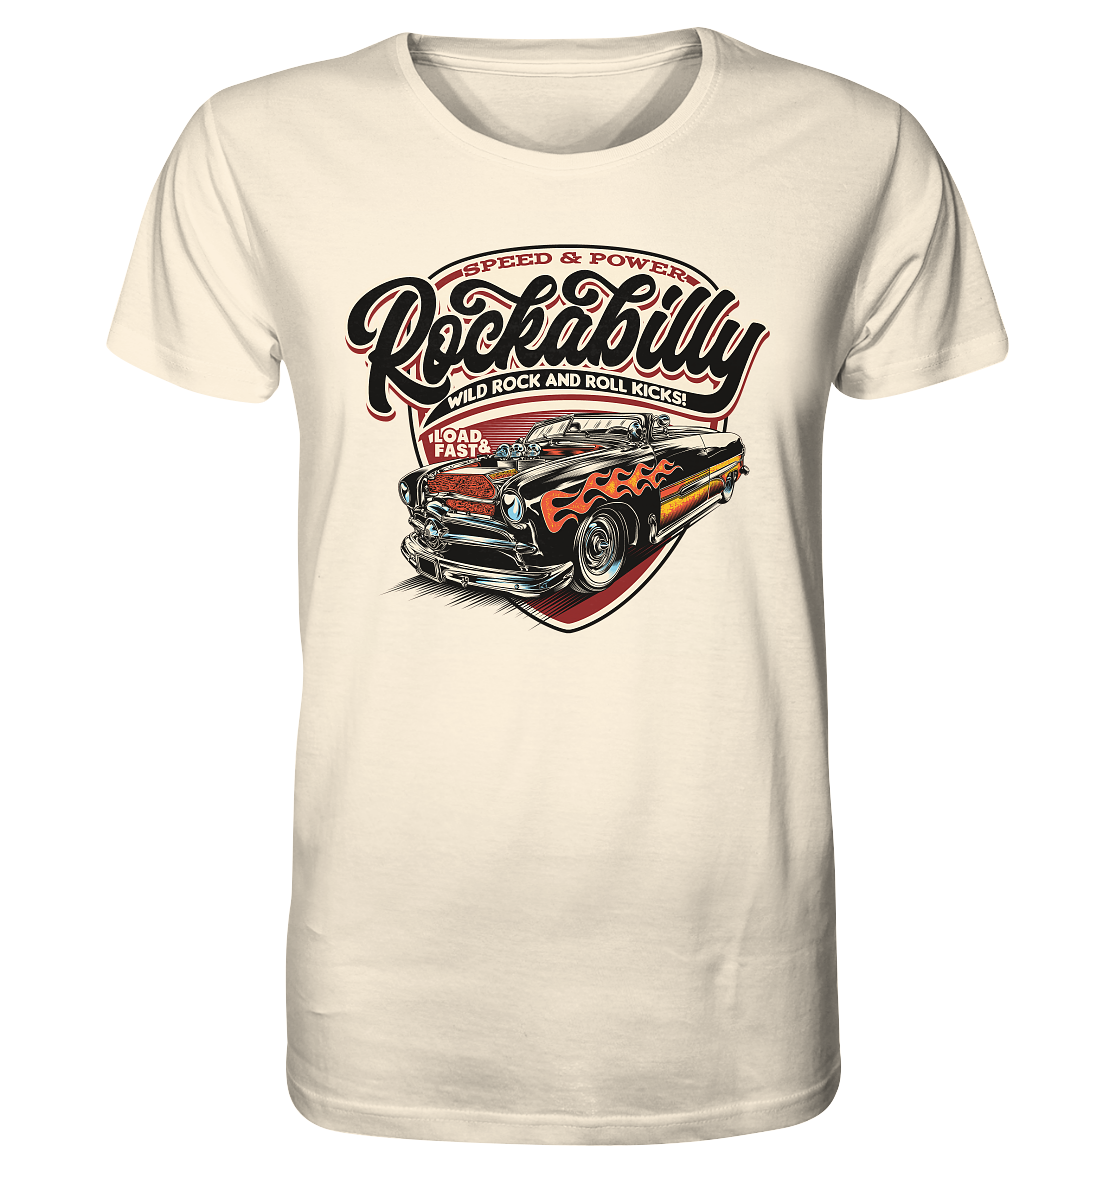 Rockabilly Speed & Power - Organic Shirt